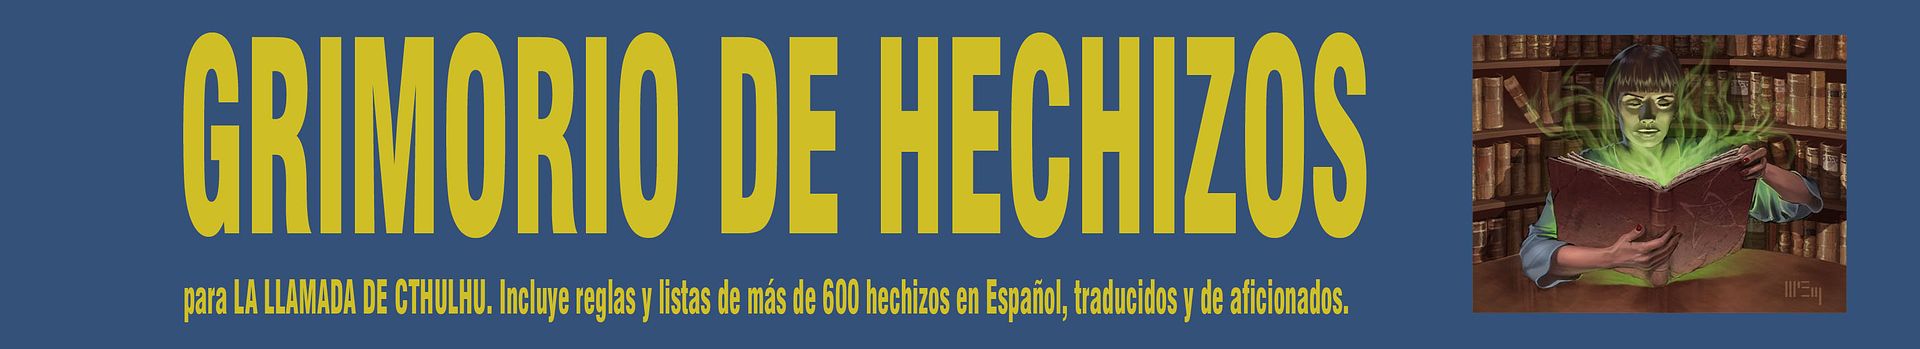 GRIMORIO DE HECHIZOS para La Llamada de Cthulhu. Incluye reglas y listas de más de 600 hechizos en Español, traducidos y de aficionados.